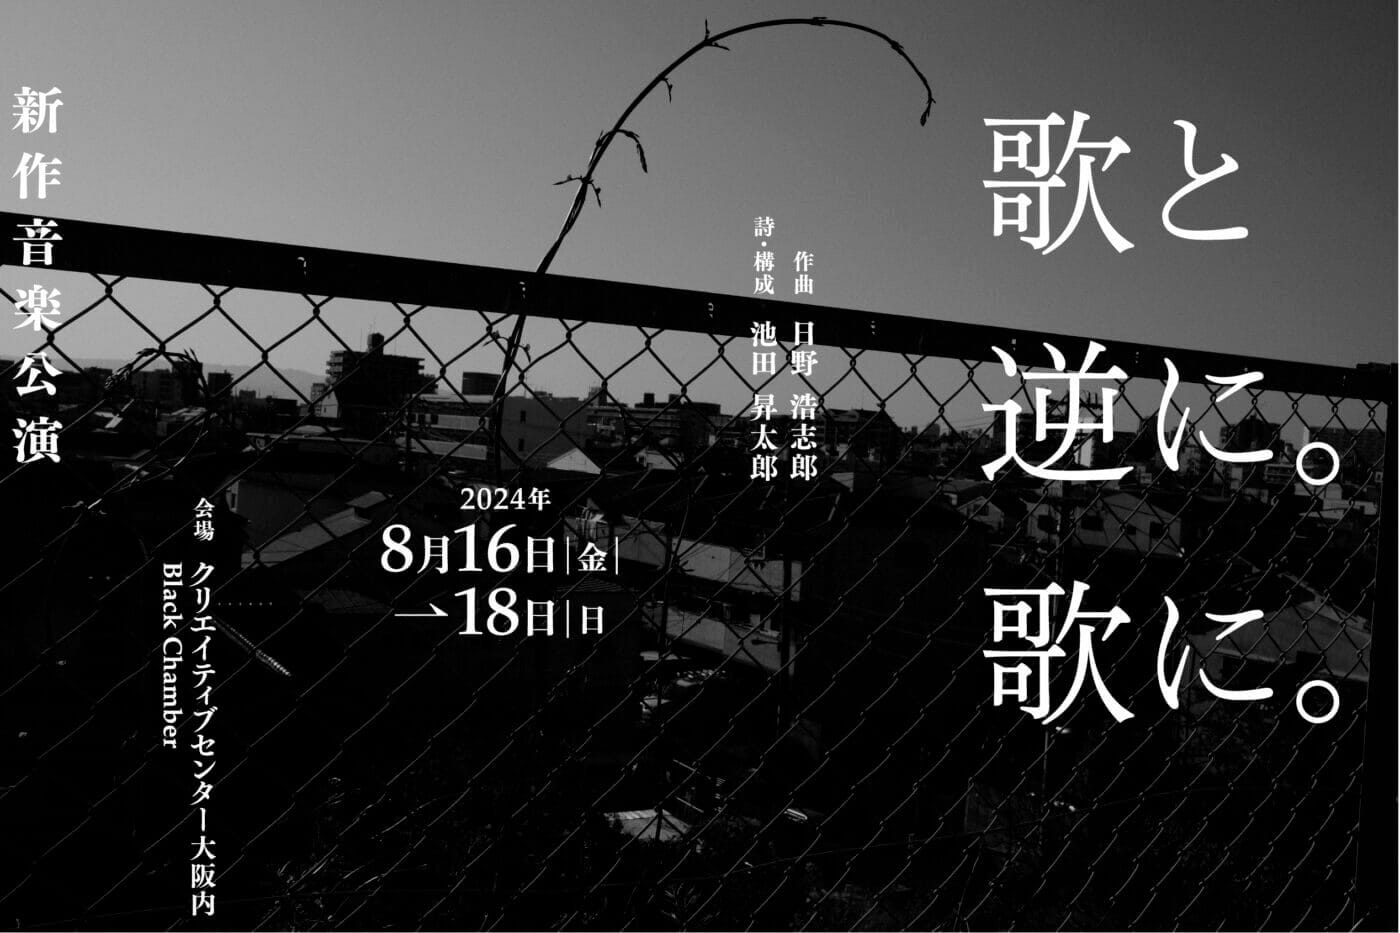 音楽家・日野浩志郎と詩人・池田昇太郎による、音と声の表現を探る3カ年プロジェクト「歌と逆に。歌に。」。新作音楽公演が2024年8月16日〜18日、クリエイティブセンター大阪にて開催。